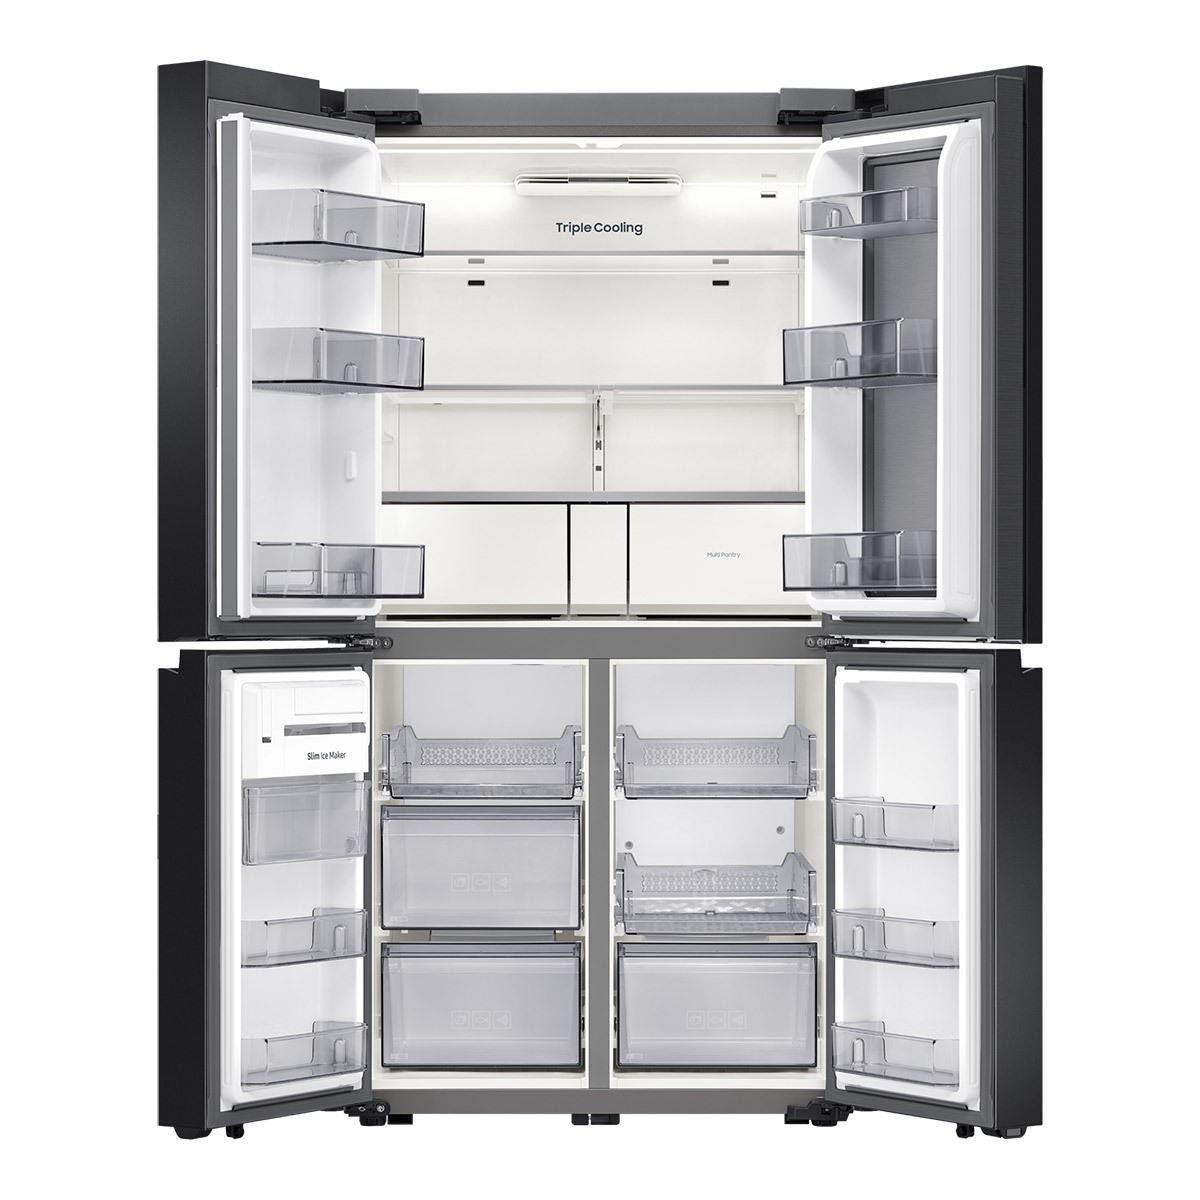 삼성 비스포크 쇼케이스 냉장고 865L-글램화이트핑크